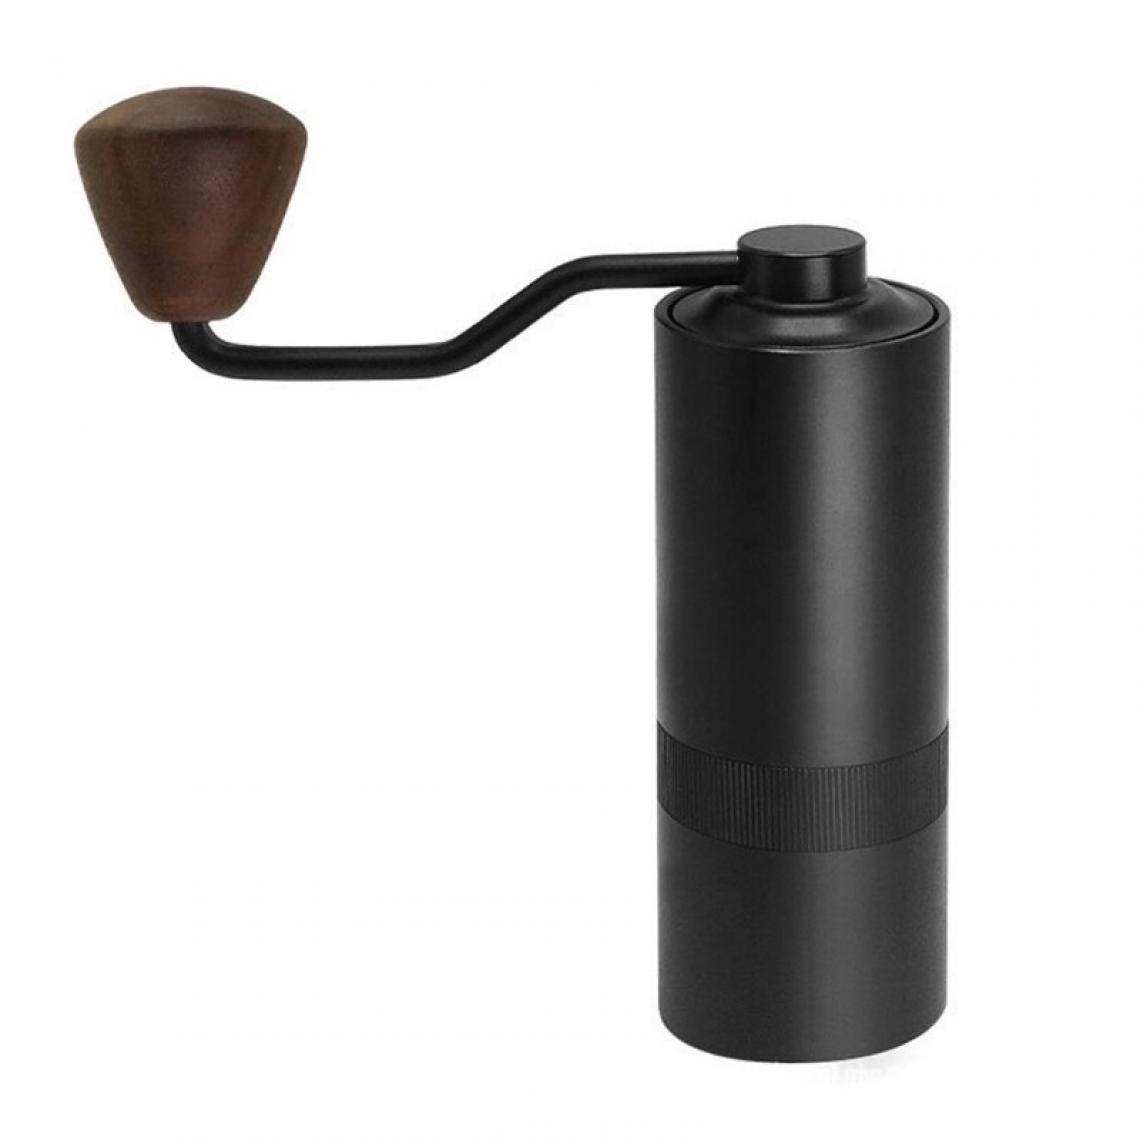 Universal - 1 broyeur à café manuel usine de café avec bavure en acier inoxydable 12 ensembles réglables broyeur à café manuel portable(Le noir) - Moulin à café